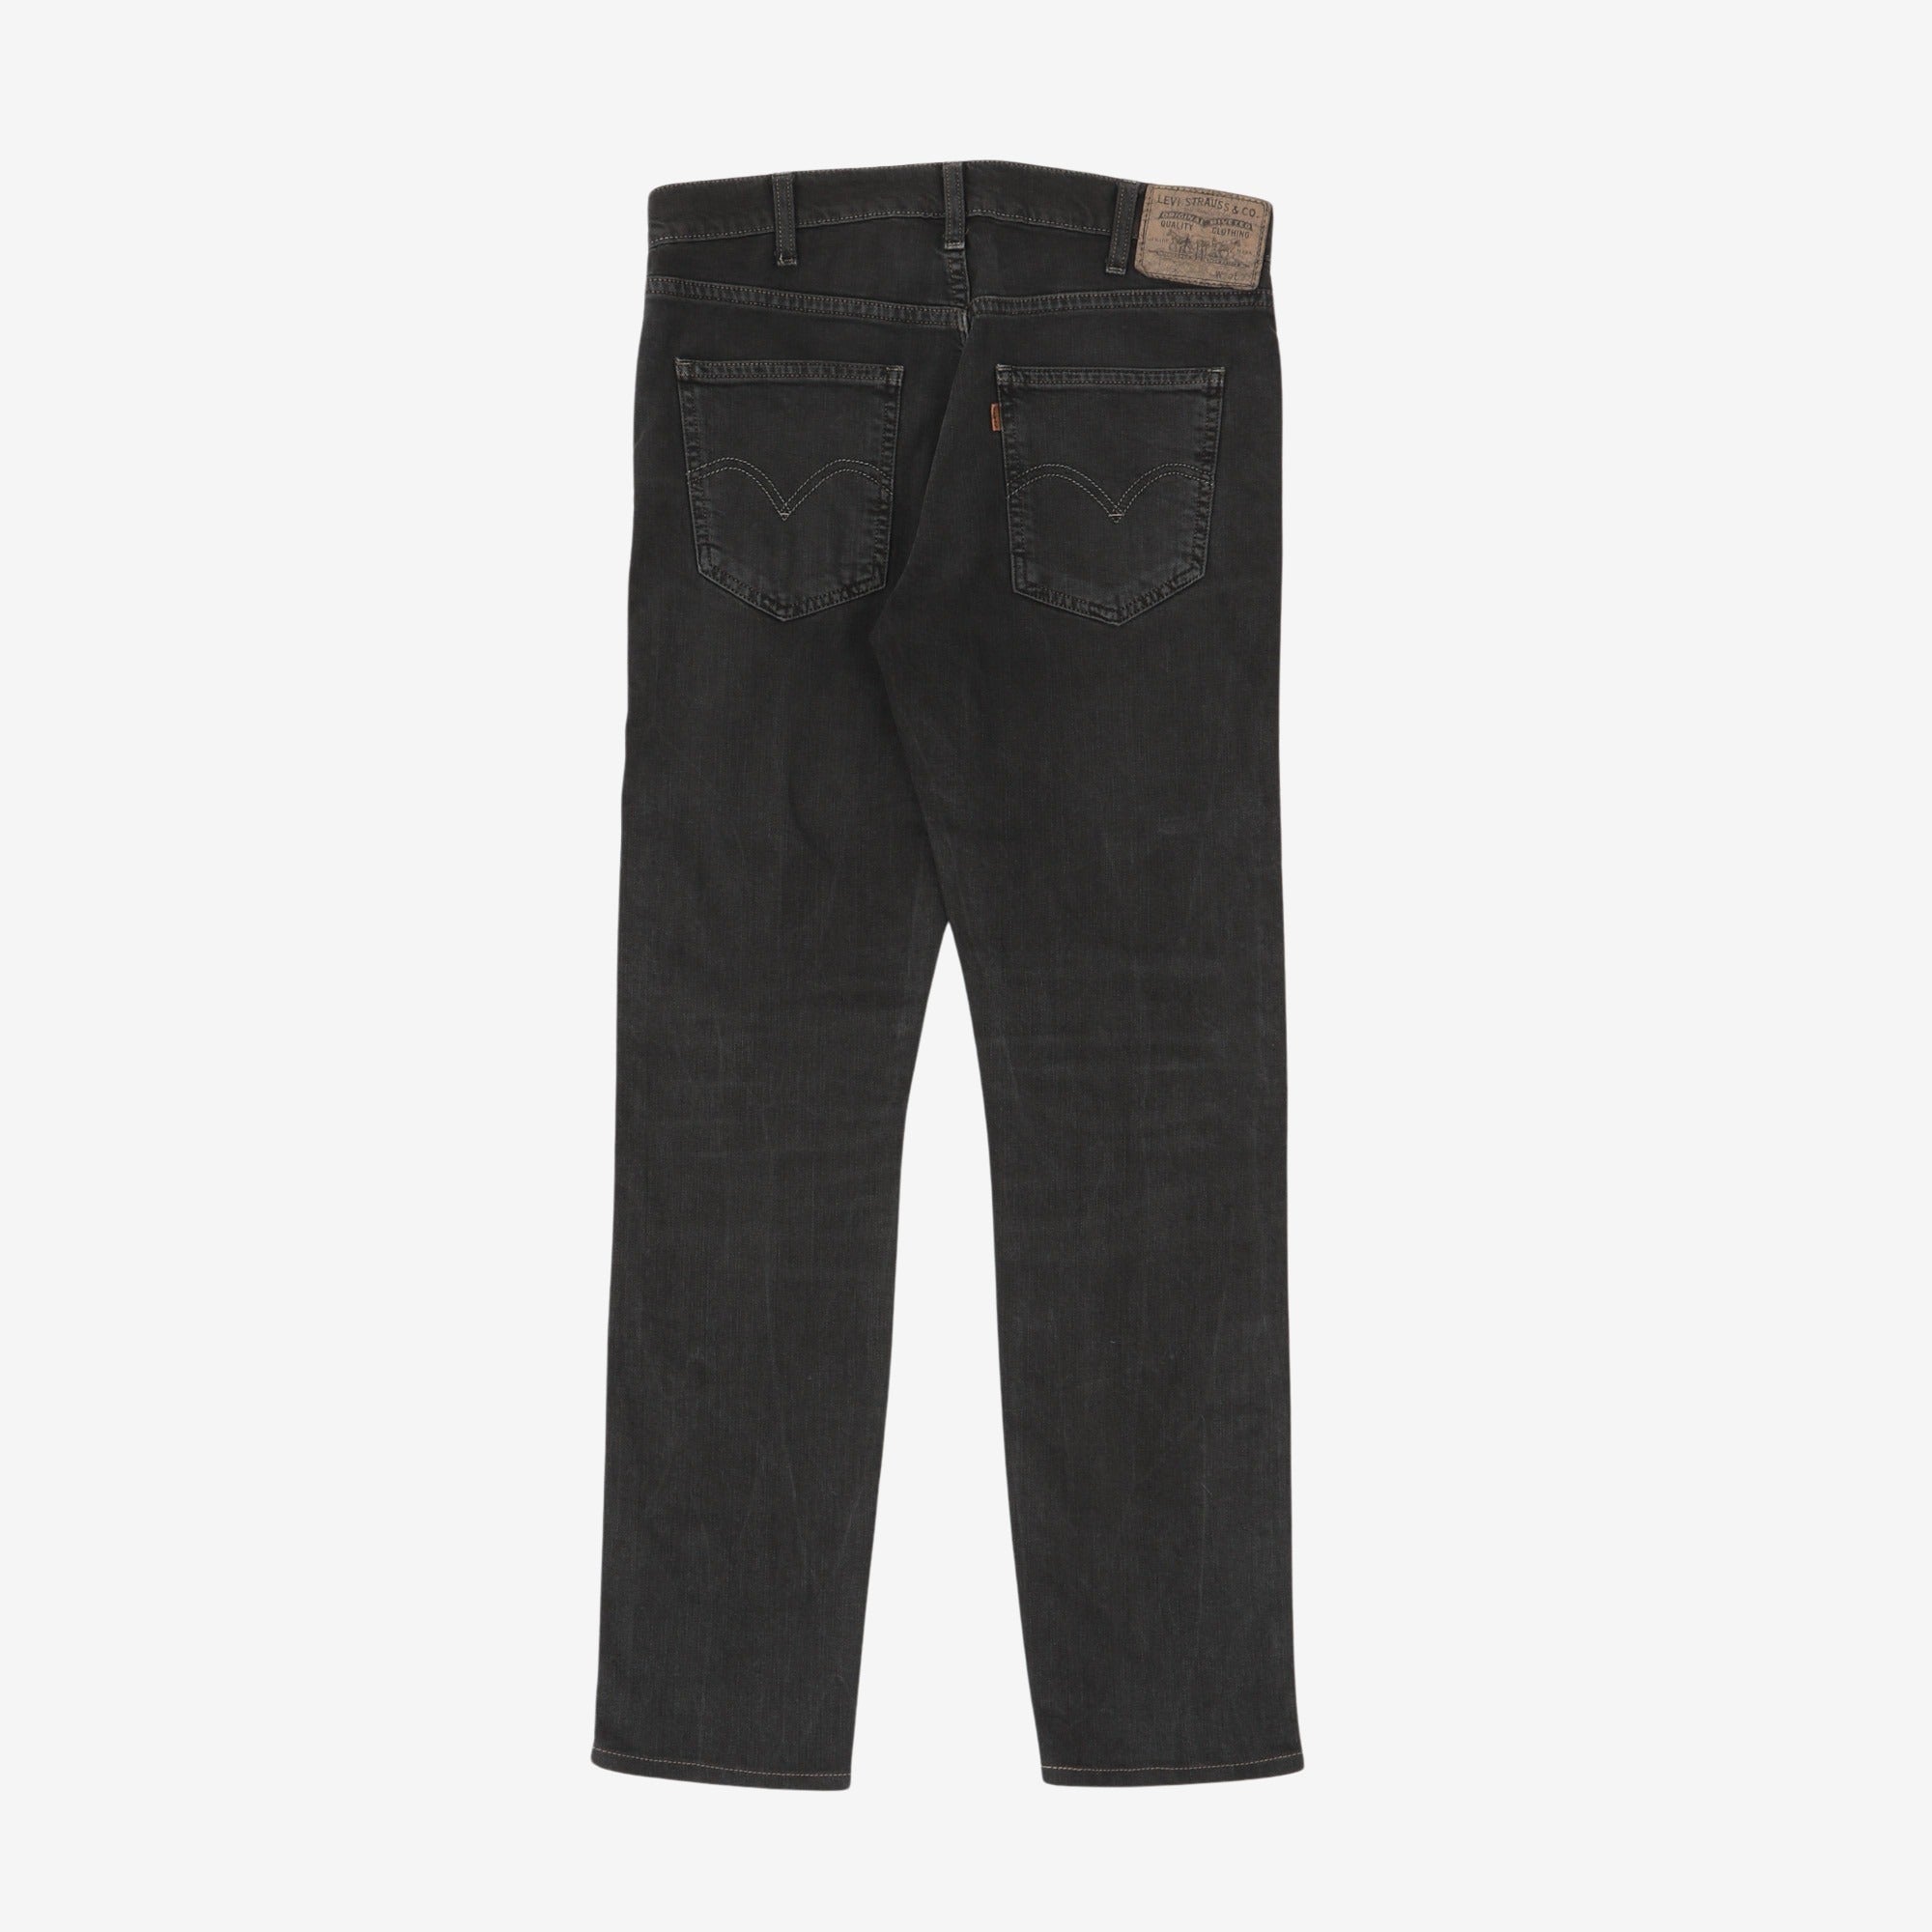 605 Jeans (USA)